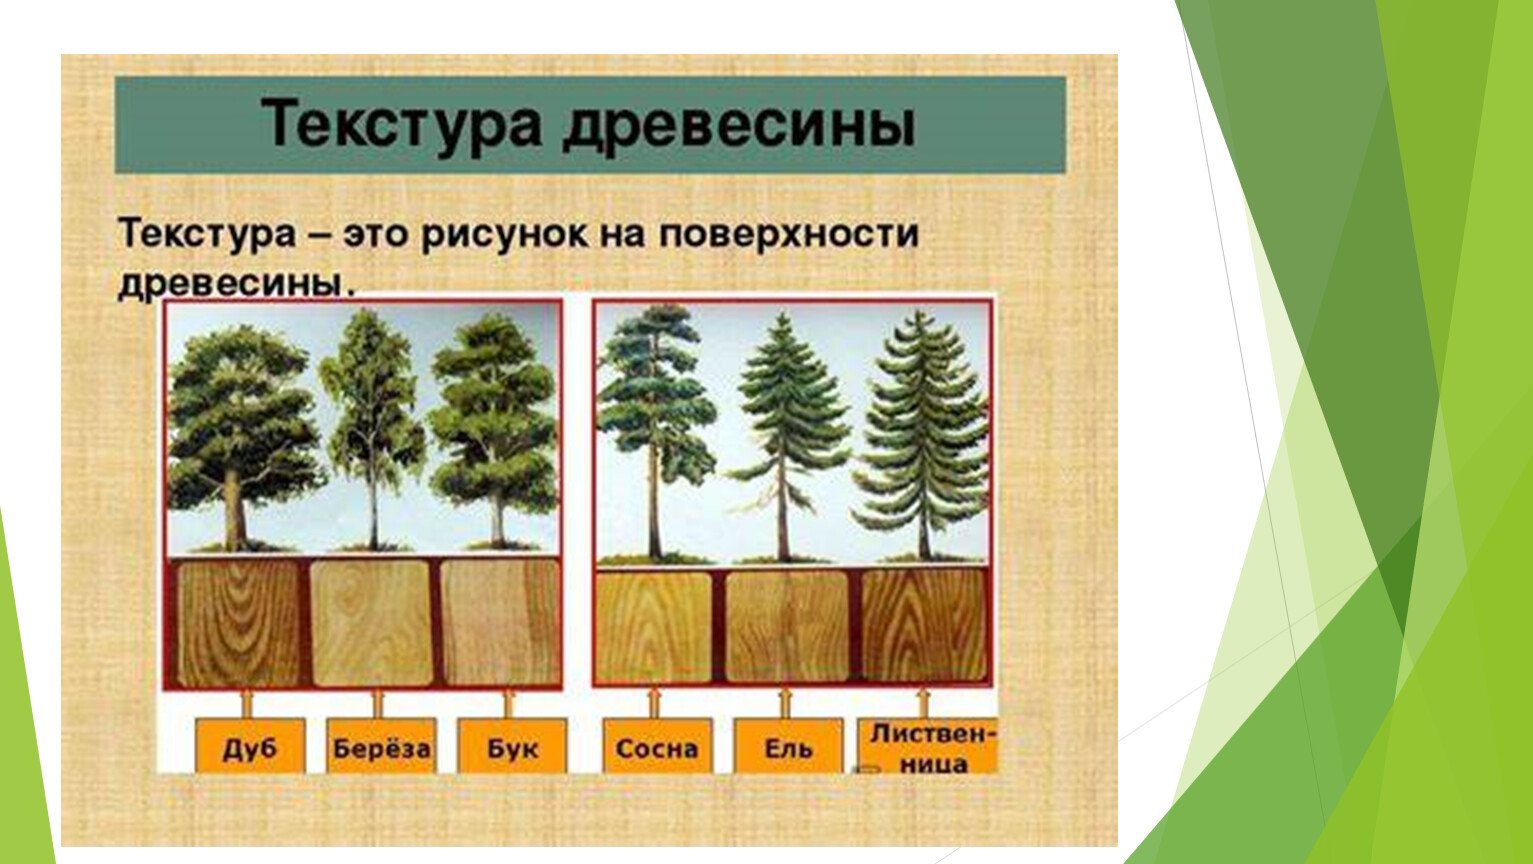 Как отличить деревья. Образцы древесины. Лиственные породы древесины. Текстура лиственных пород древесины. Хвойные и лиственные породы деревьев.